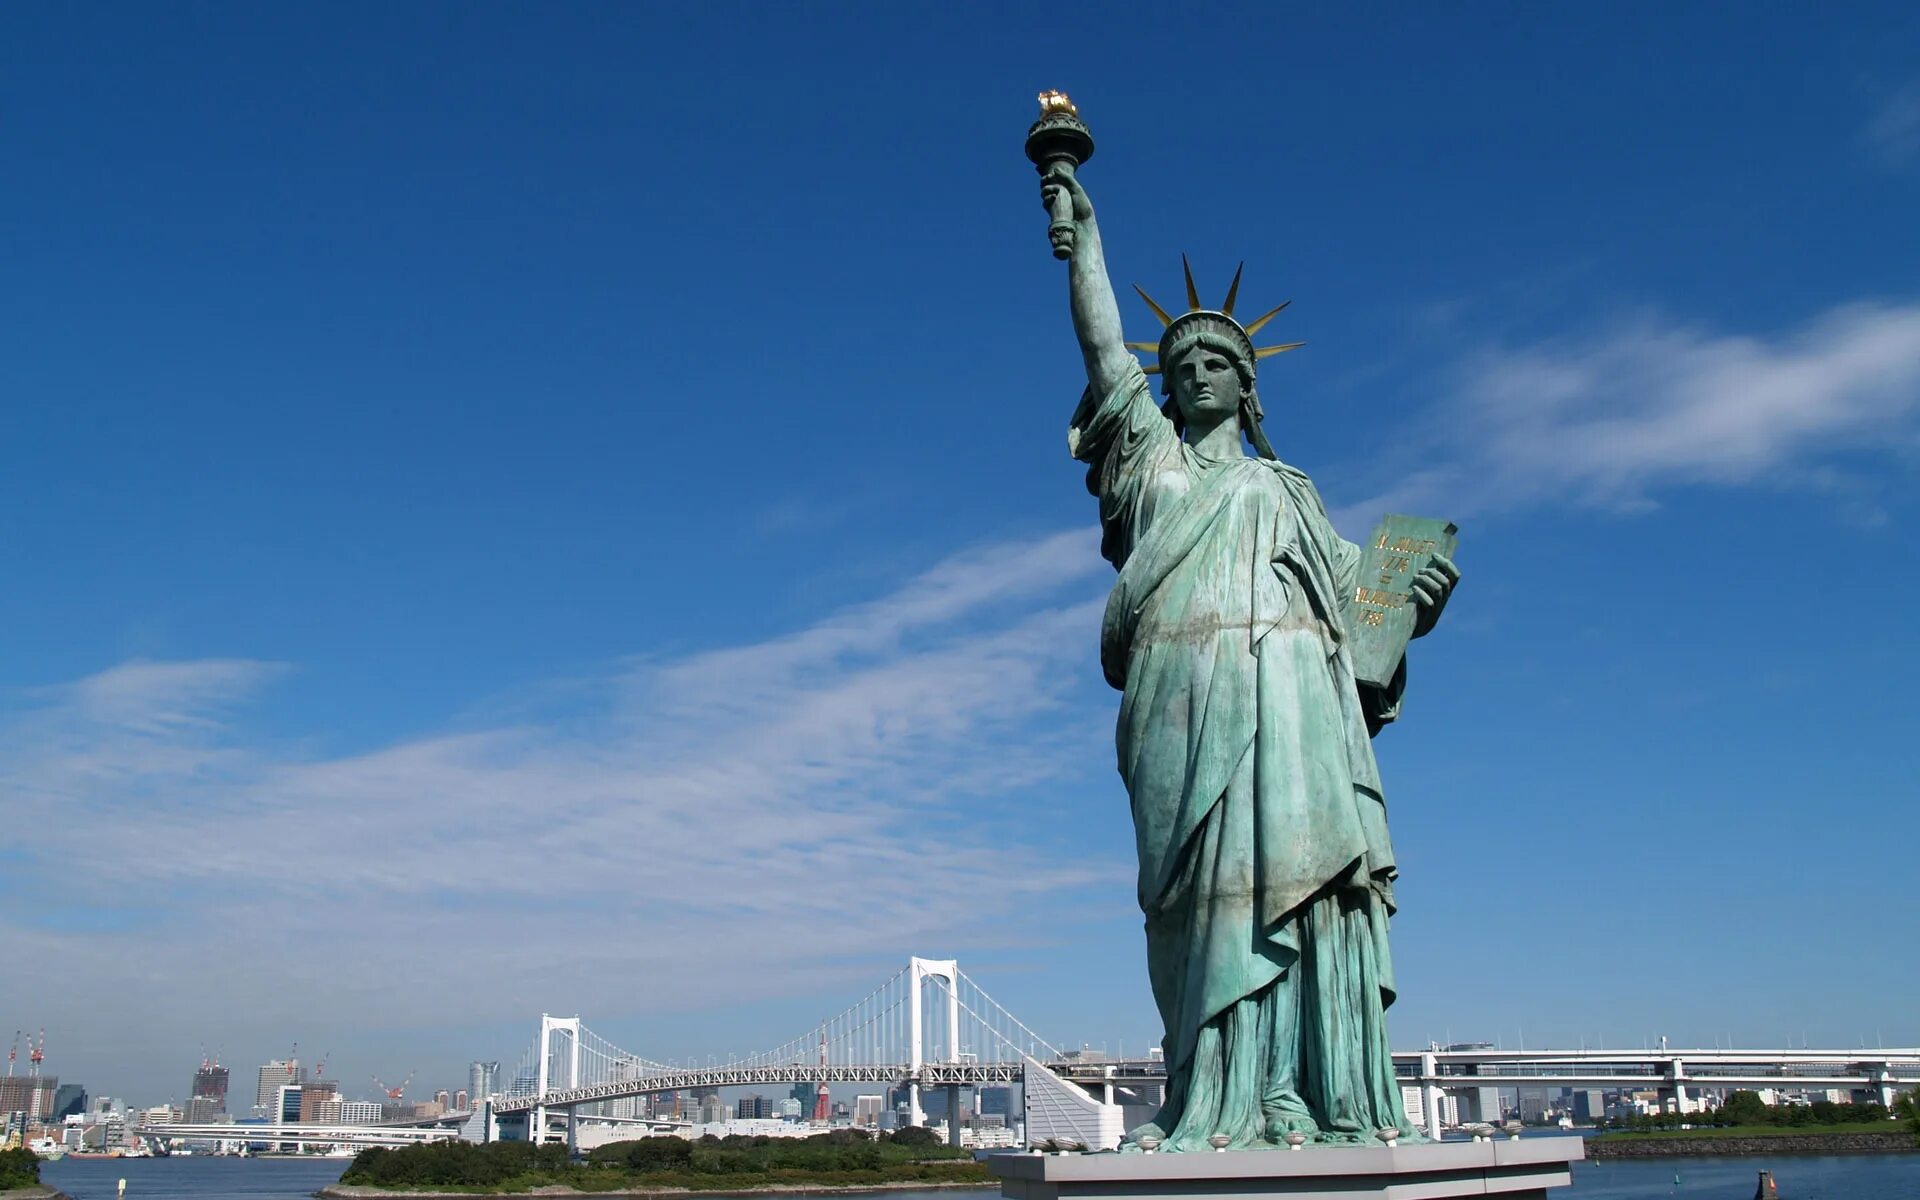 Статуя стран. Статуя свободы Нью-Йорк. НЬЮЙ РРК статуя свободы. Нью-Йорк бстатуясвободы. Нью-Йорк Сити статуя свободы.